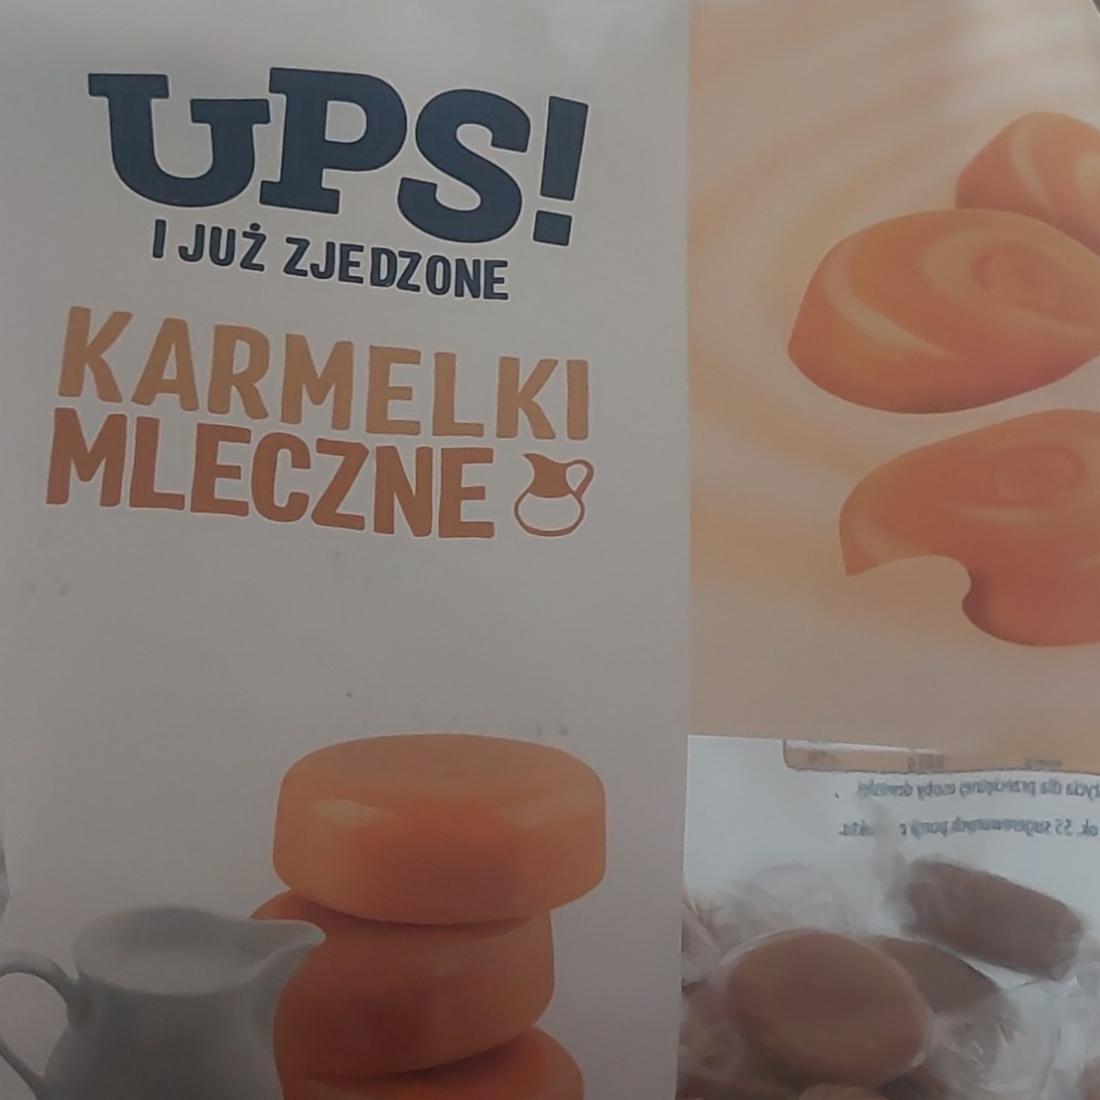 Фото - Karamelki mleczne UPS!